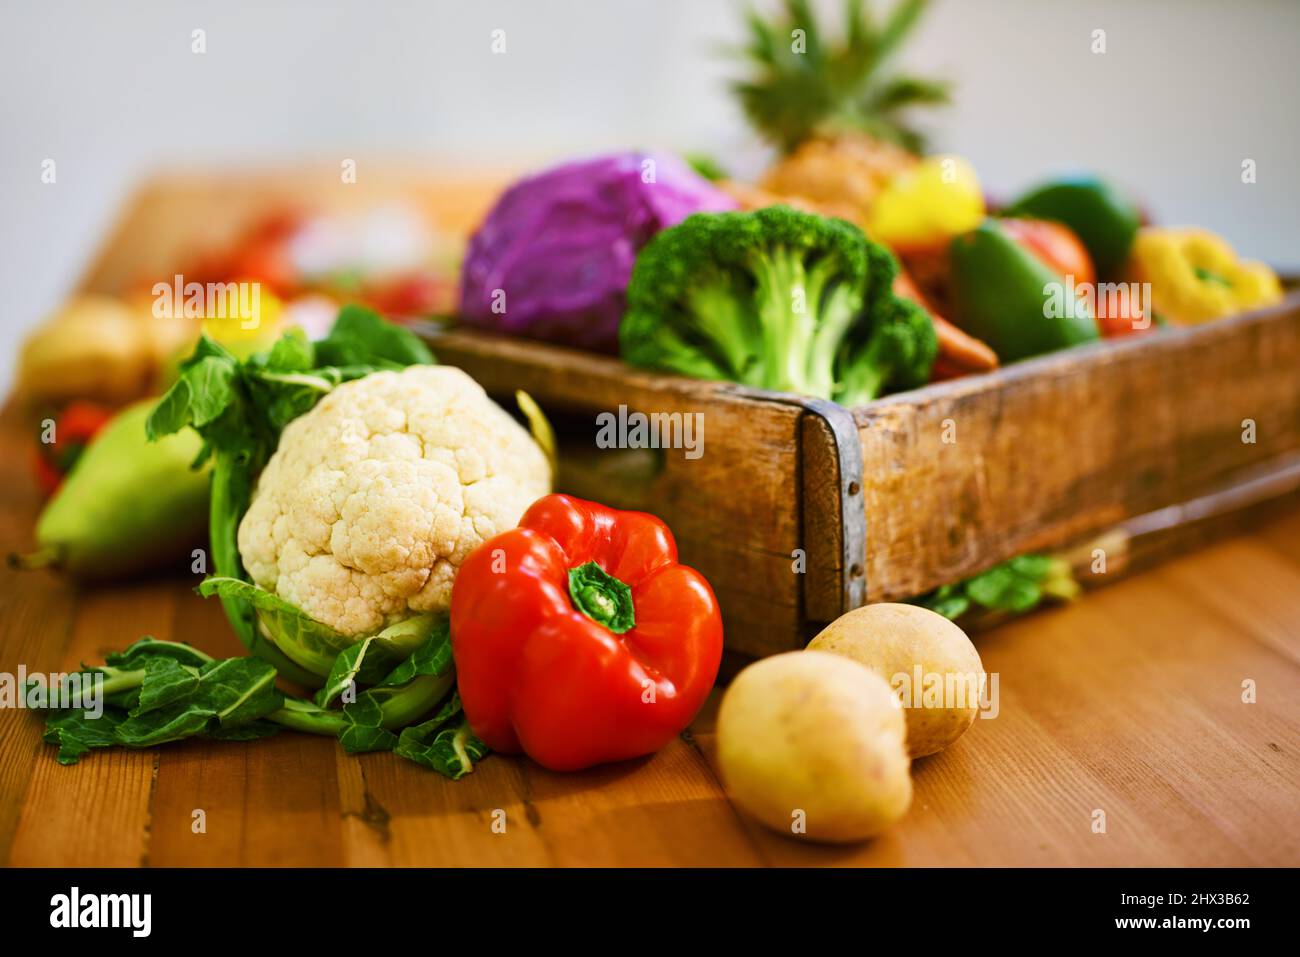 Alle Lebensmittel, die Sie sich wünschen könnten. Aufnahme einer Sammlung von Obst und Gemüse, die auf einem Tisch liegt. Stockfoto